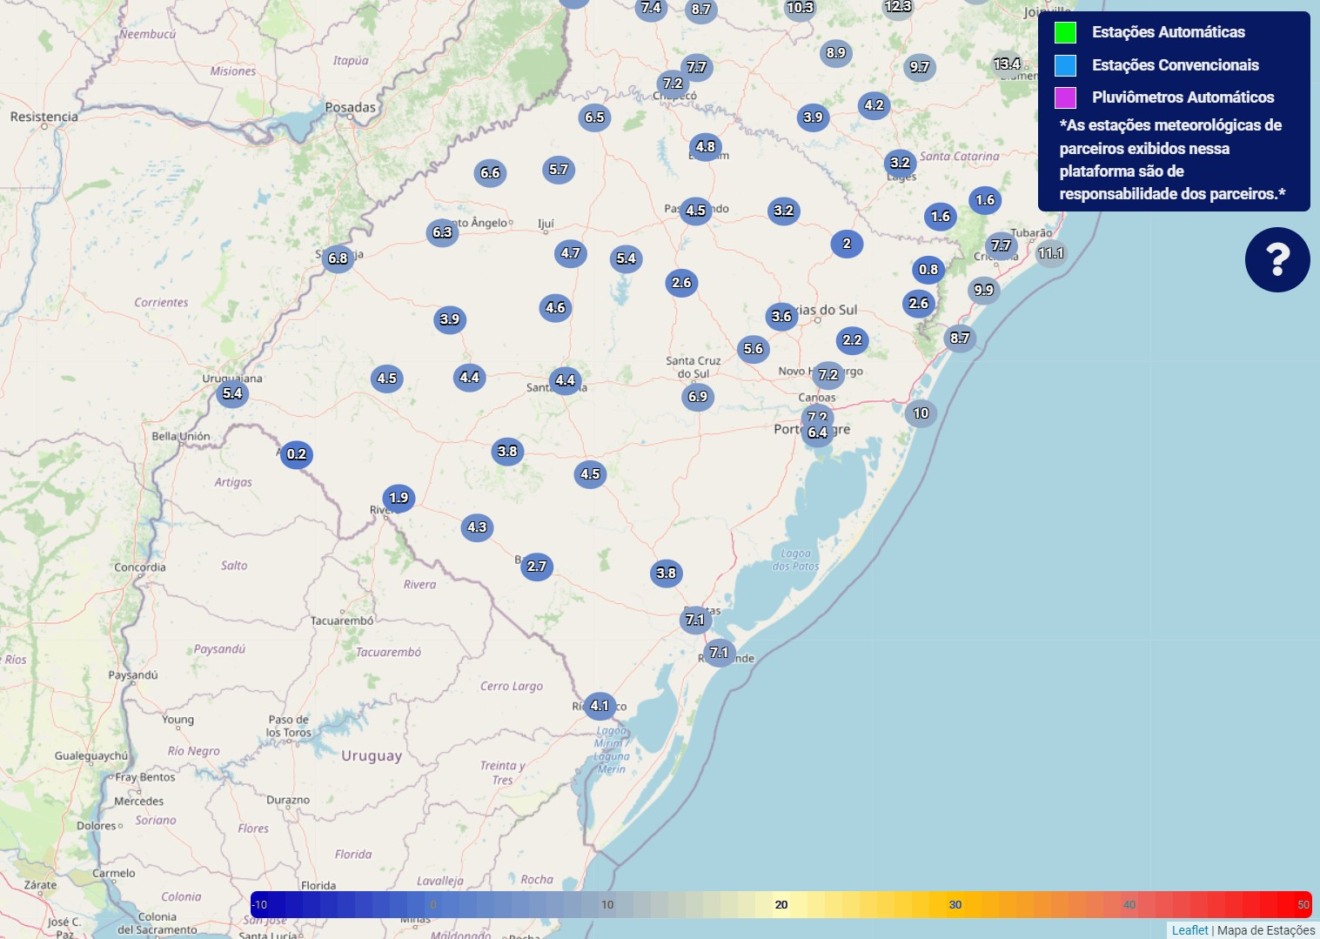 Mapa do Rio Grande do Sul com as temperaturas mínimas nas cidades onde há estações do INMET.